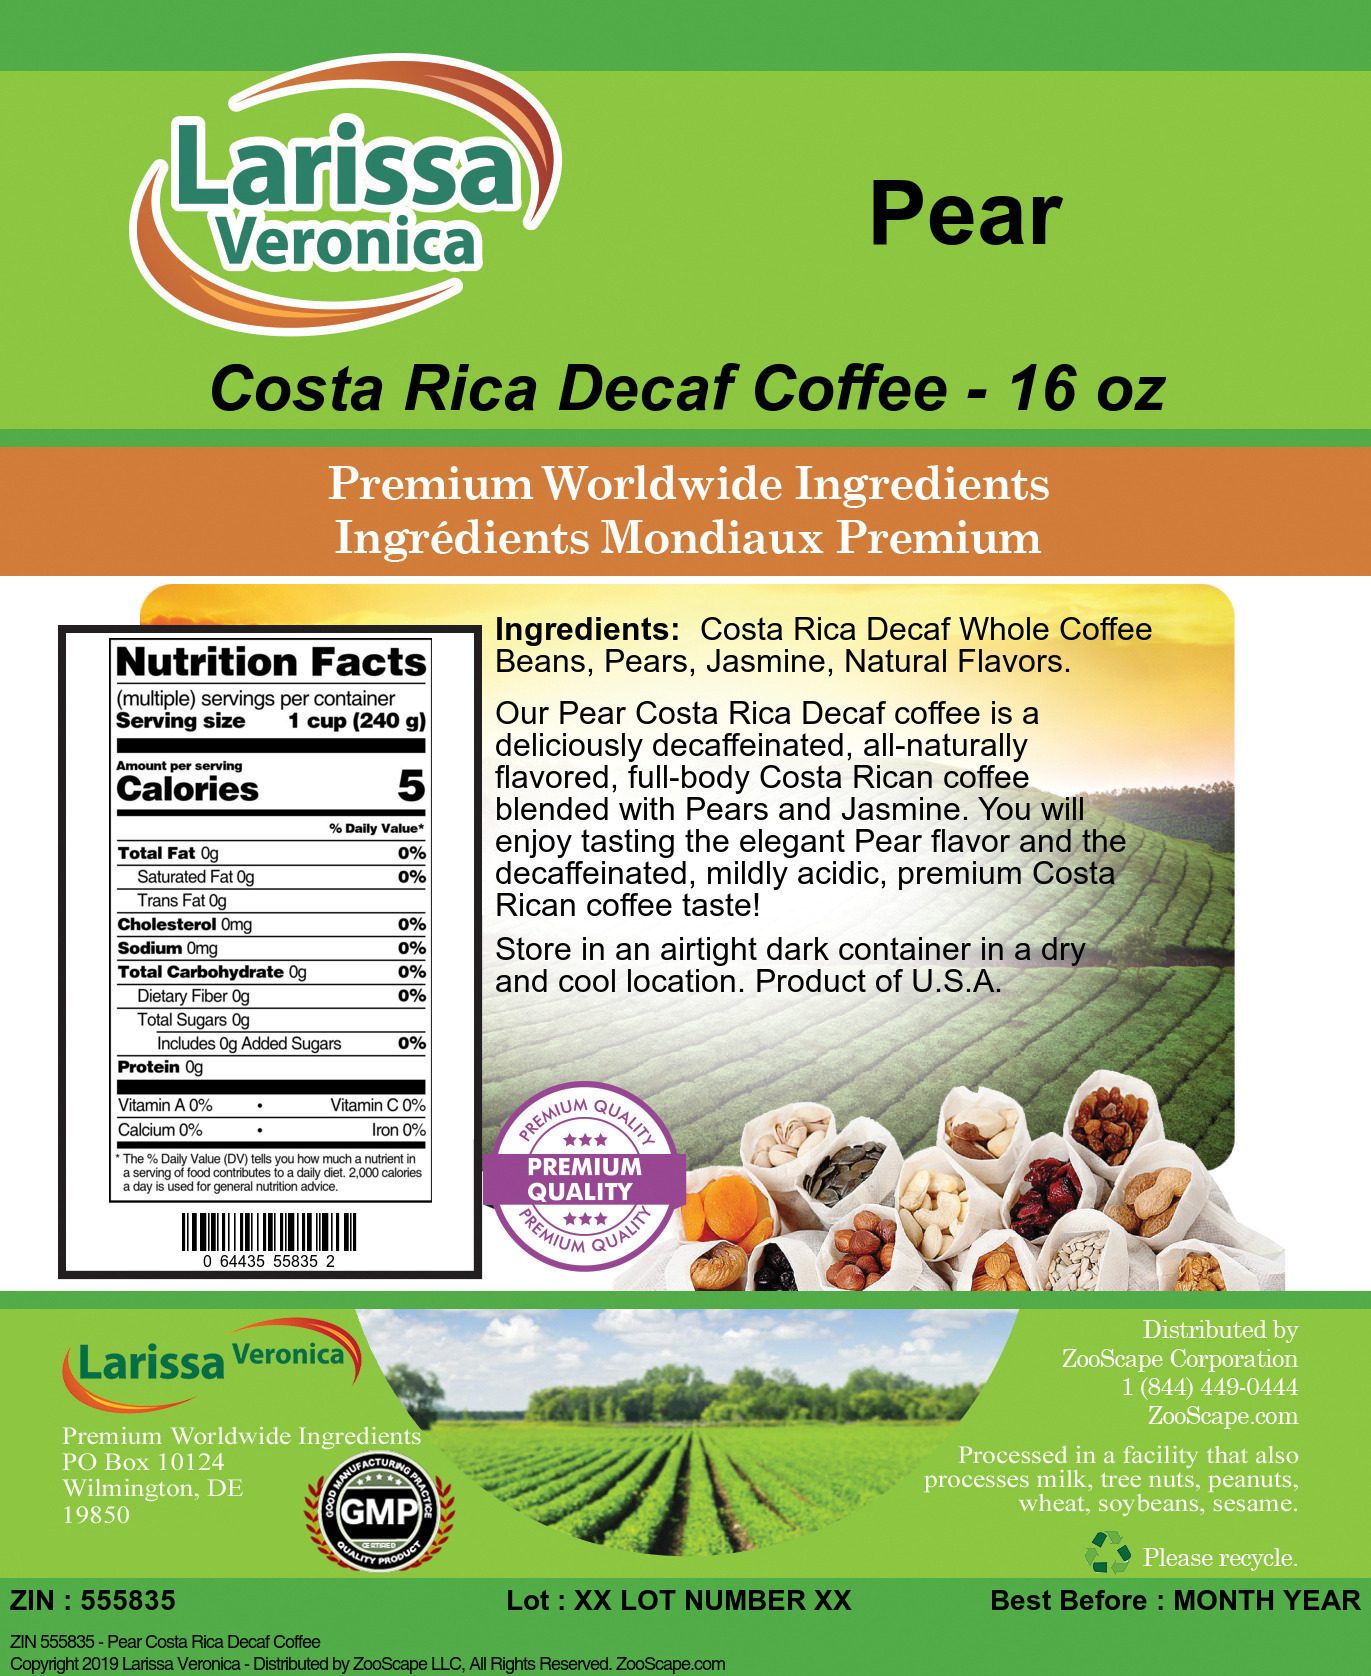 Pear Costa Rica Decaf Coffee - Label